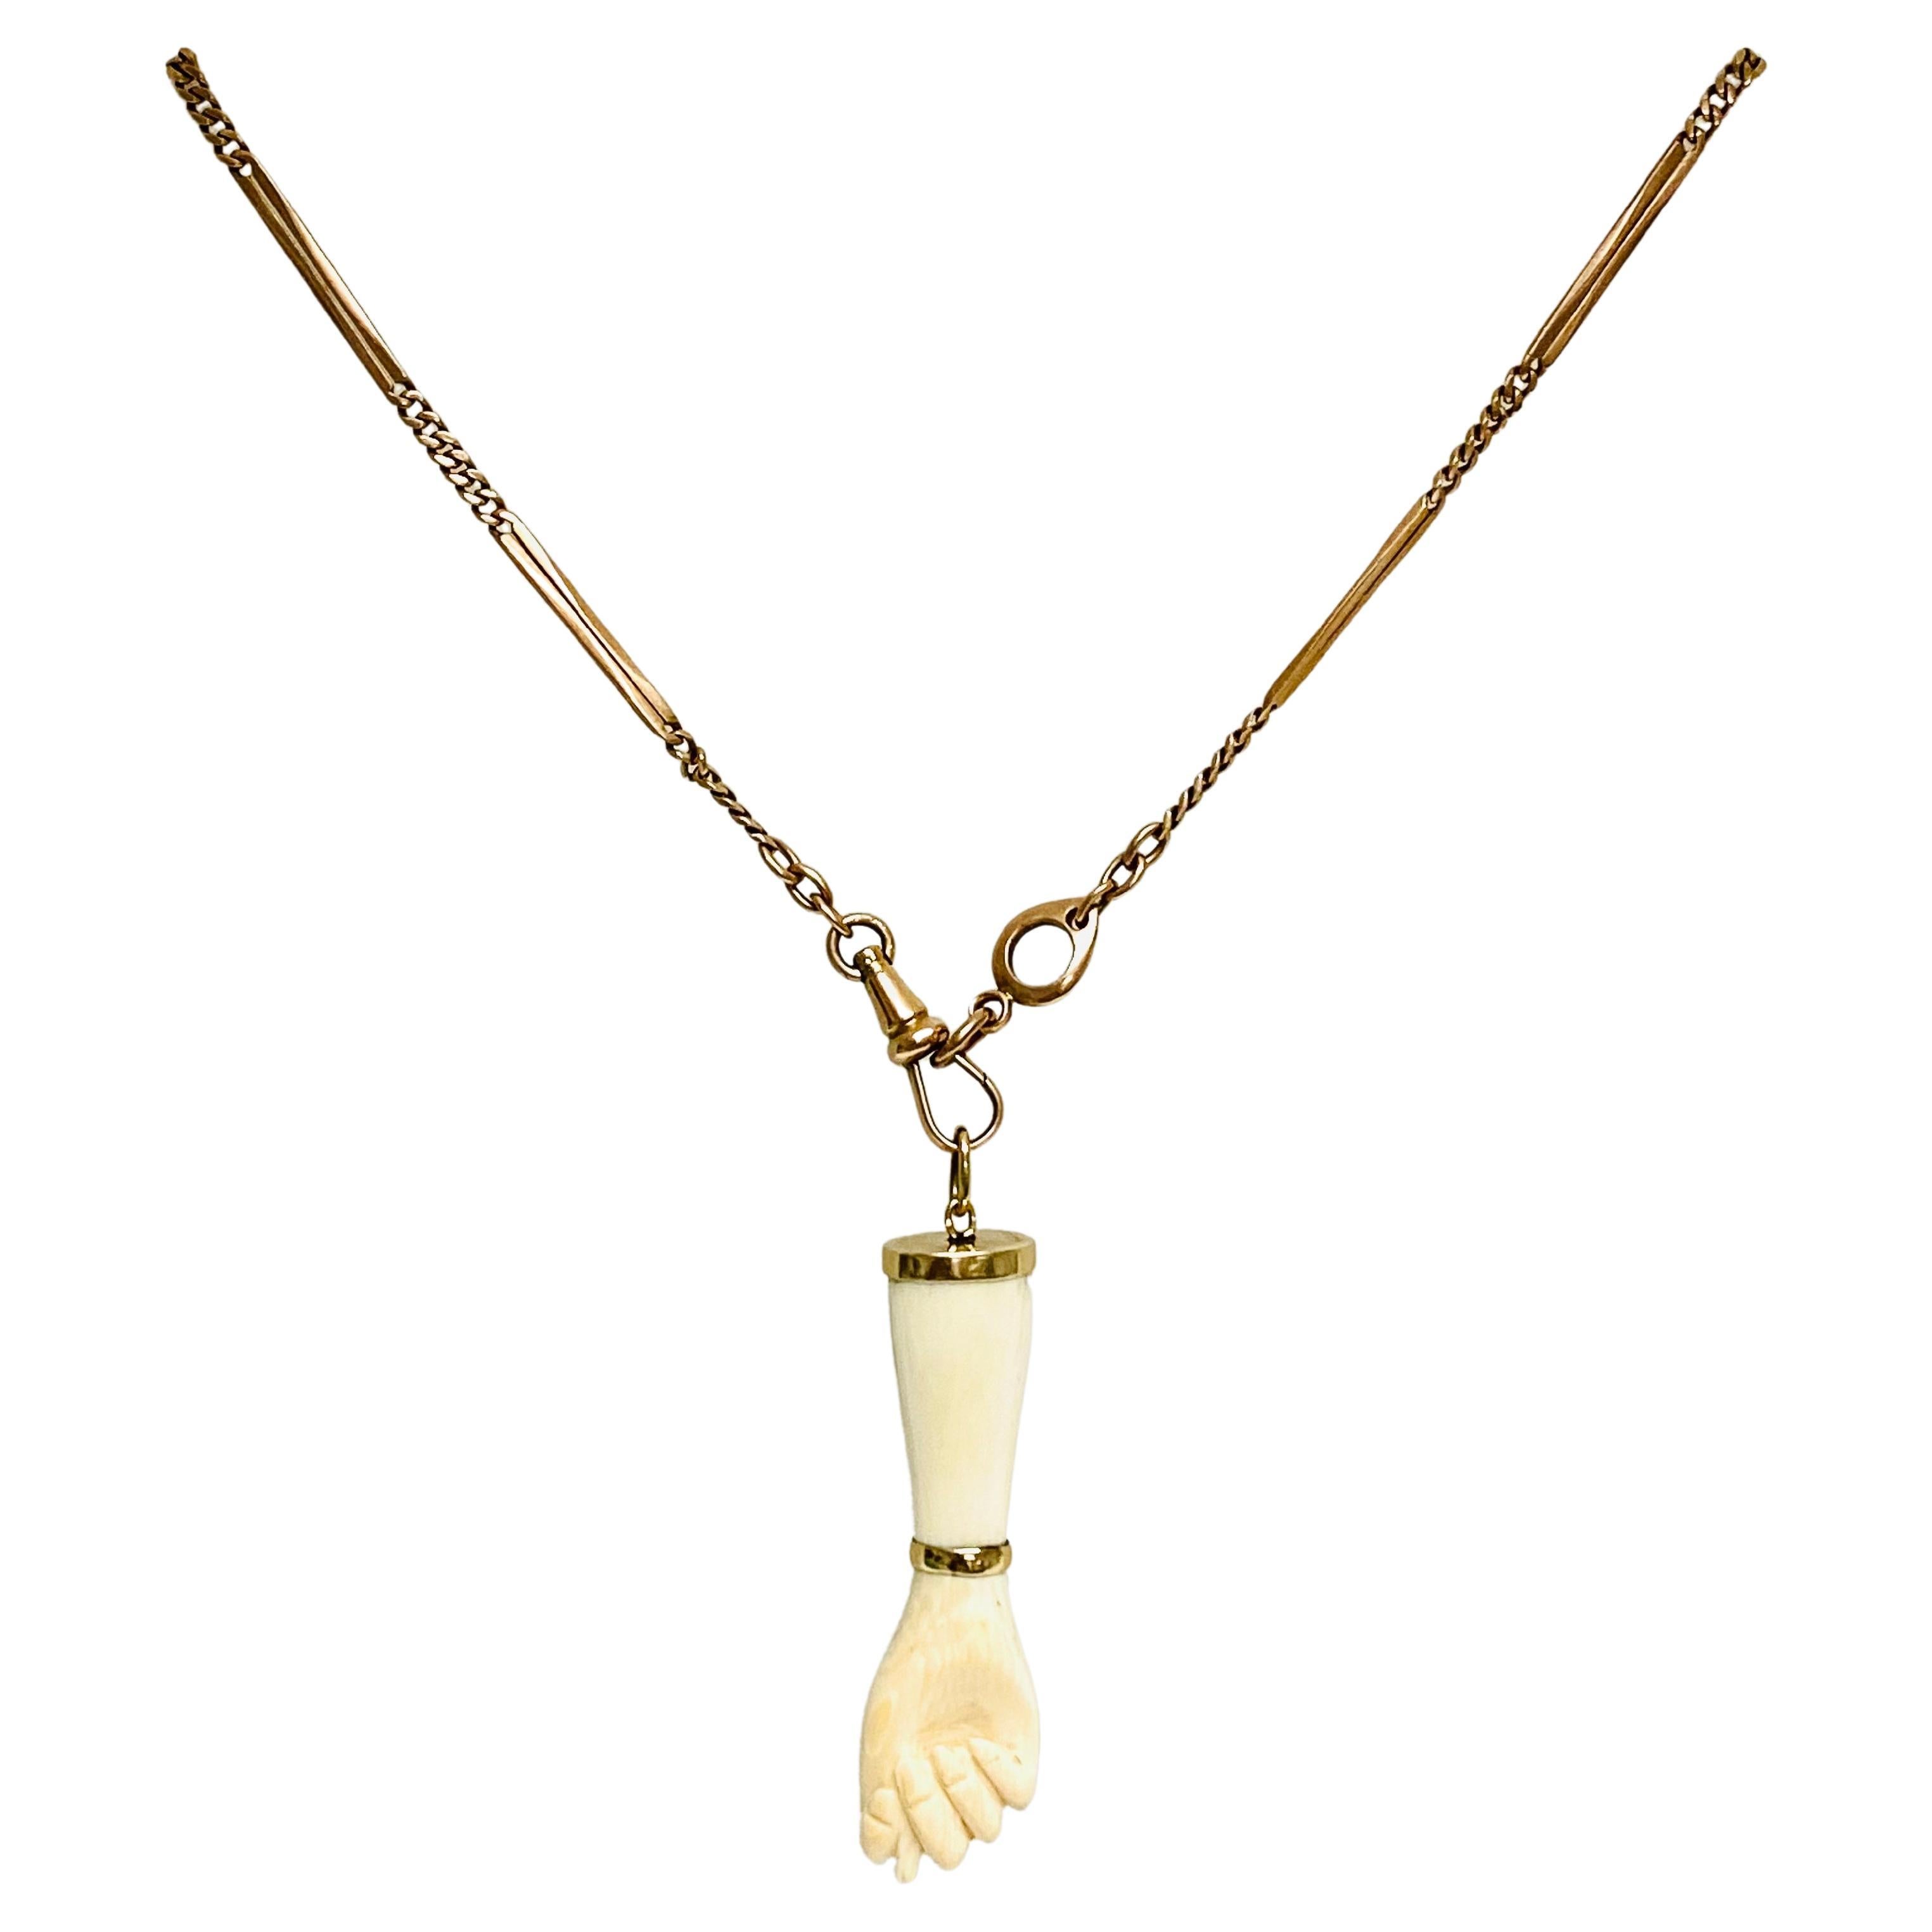 Victorian 10k Gold Chain Figa Pendant Necklace